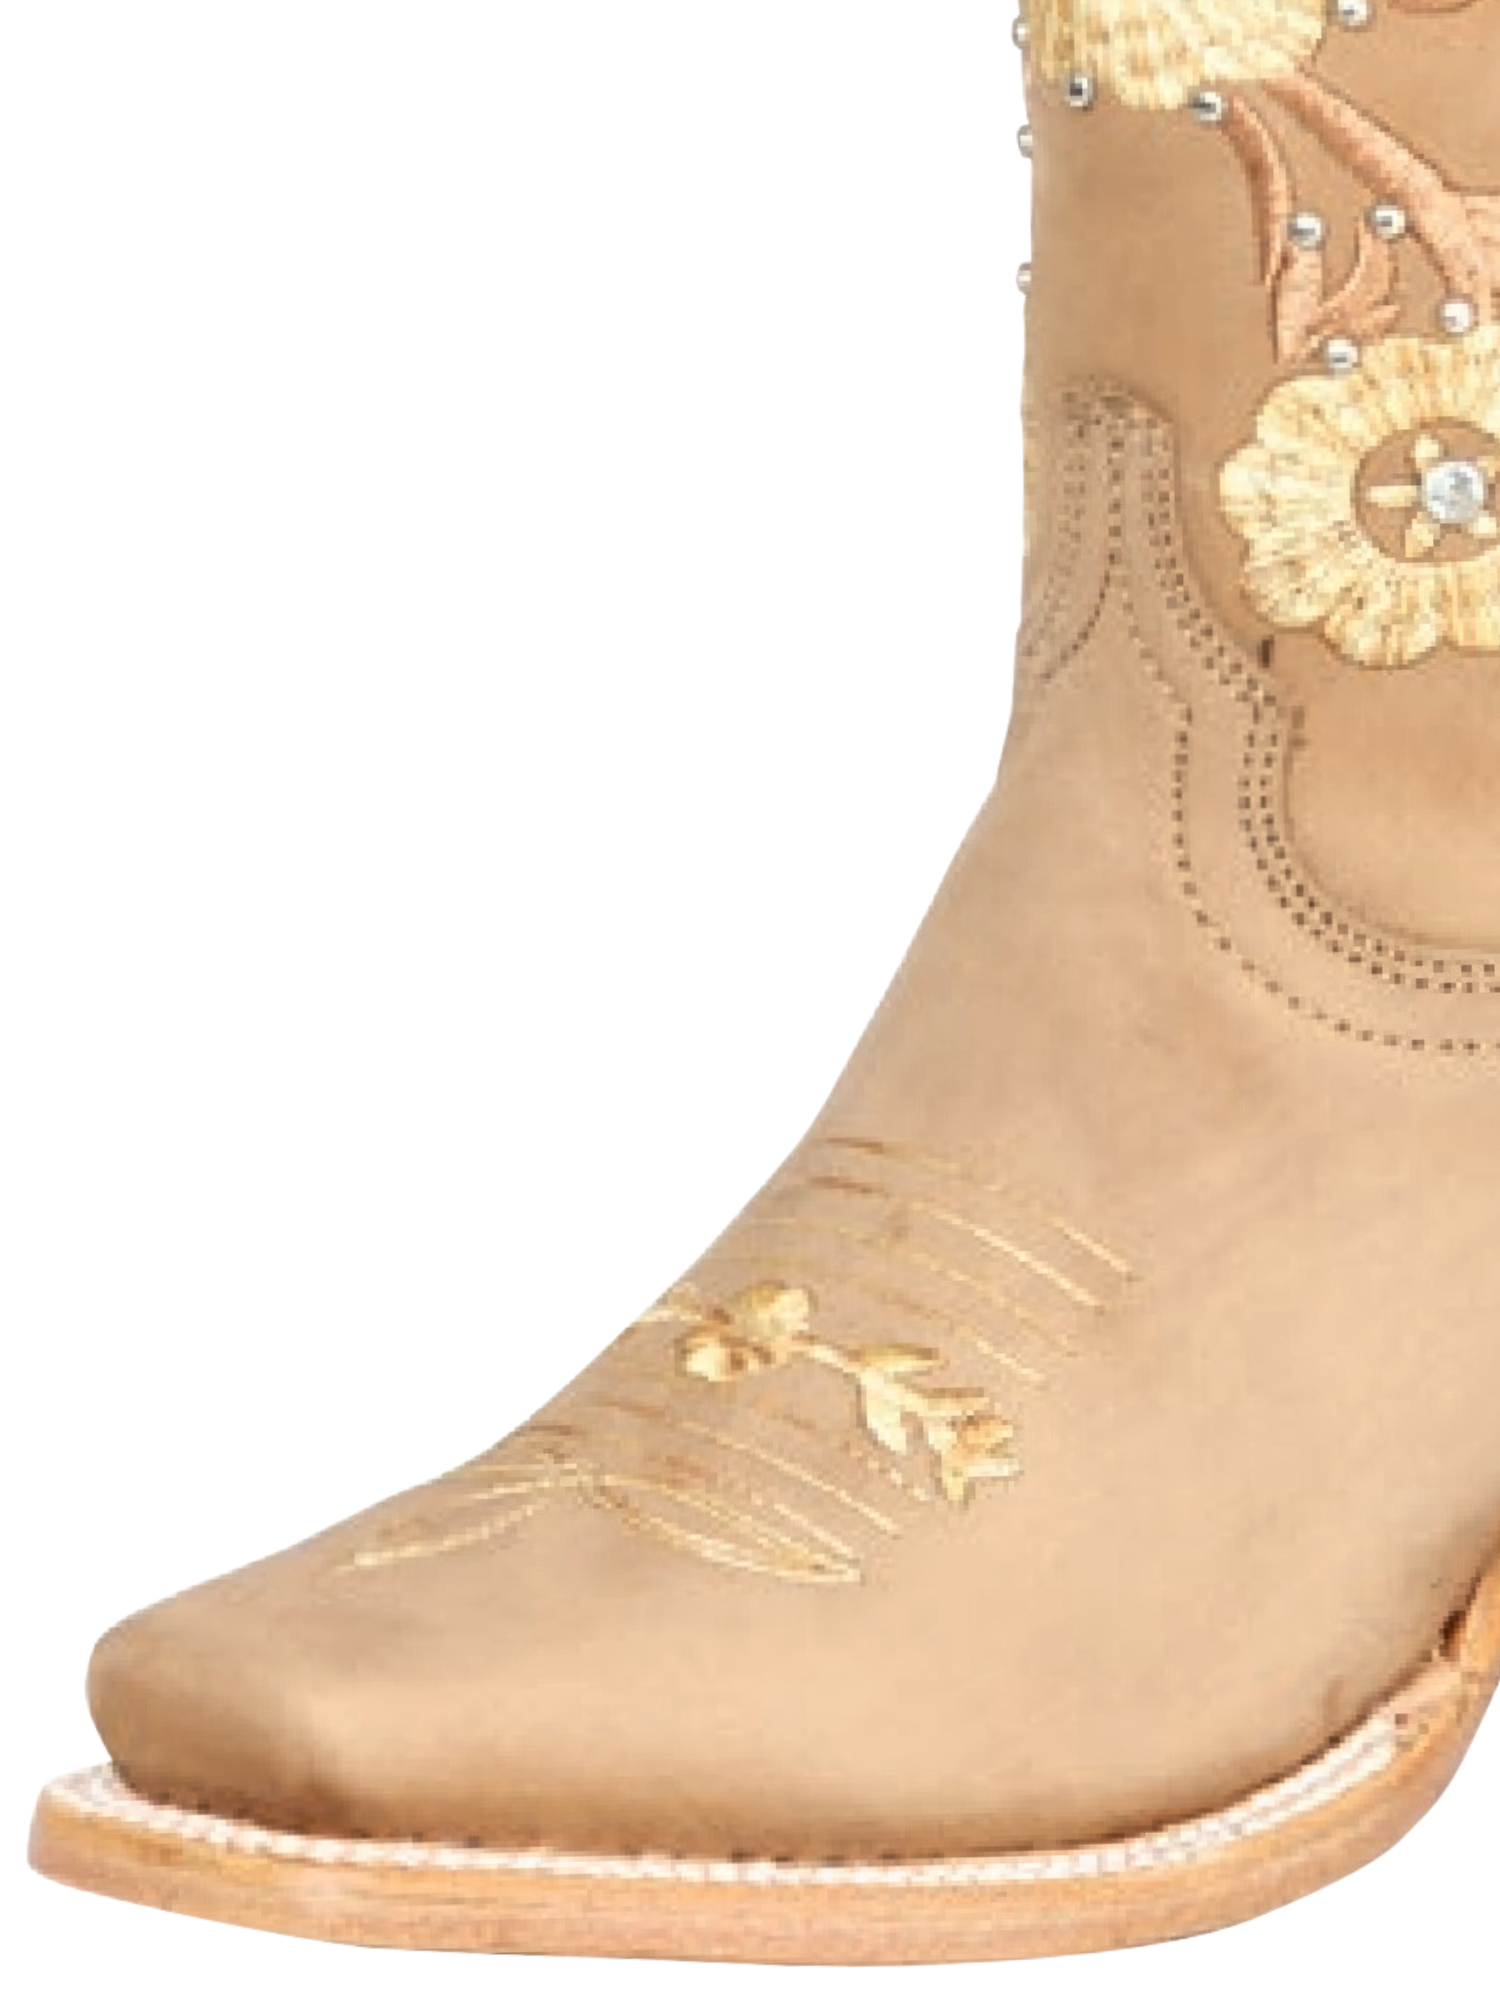 Botas Vaqueras Rodeo con Tubo Bordado de Flores de Piel Genuina para Mujer 'Jar Boots' - ID: 126450 Cowgirl Boots Jar Boots 